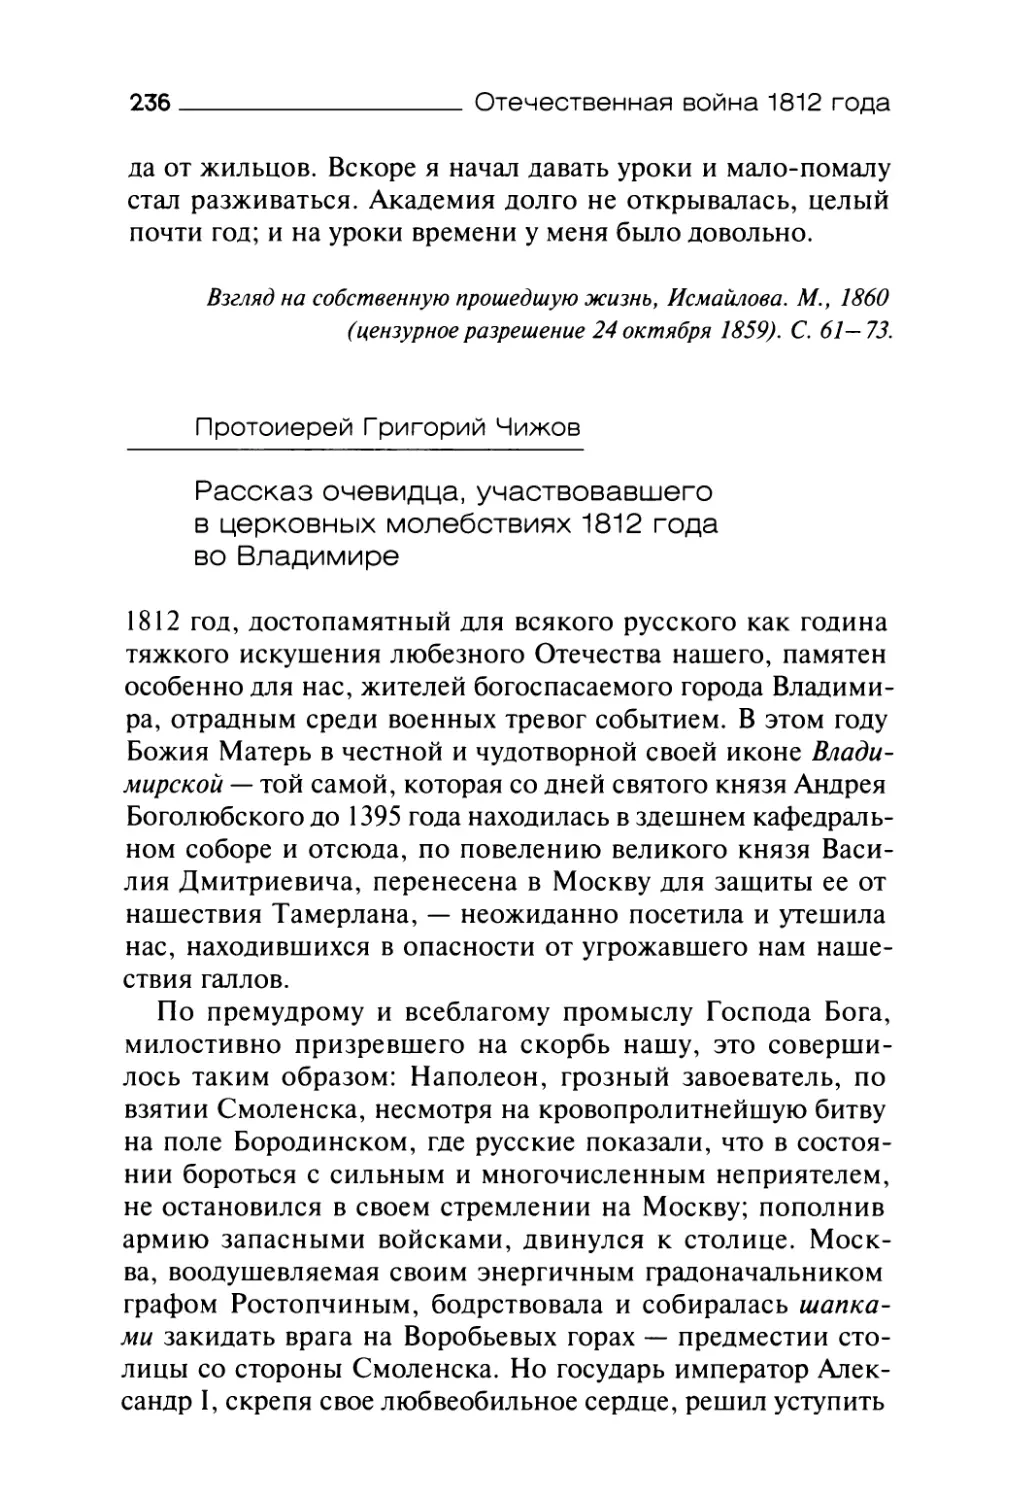 Протоиерей Григорий Чижов. Рассказ очевидца, участвовавшего в церковных молебствиях 1812 года во Владимире